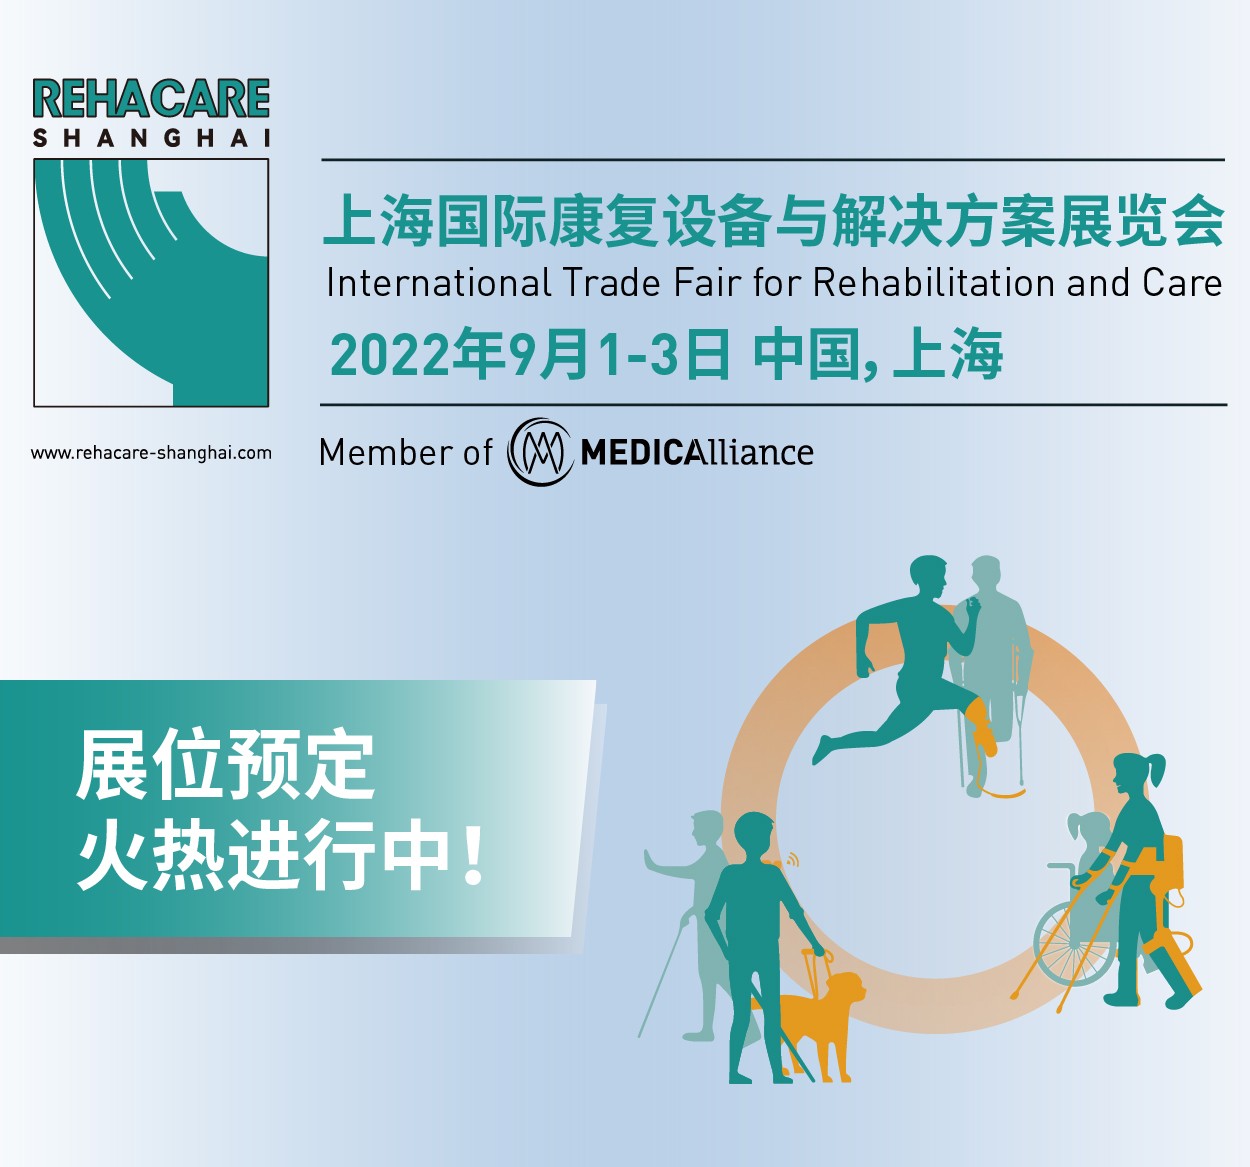 杜塞尔多夫展览集团公司在华引入全新展会——上海国际康复设备与解决方案展览会